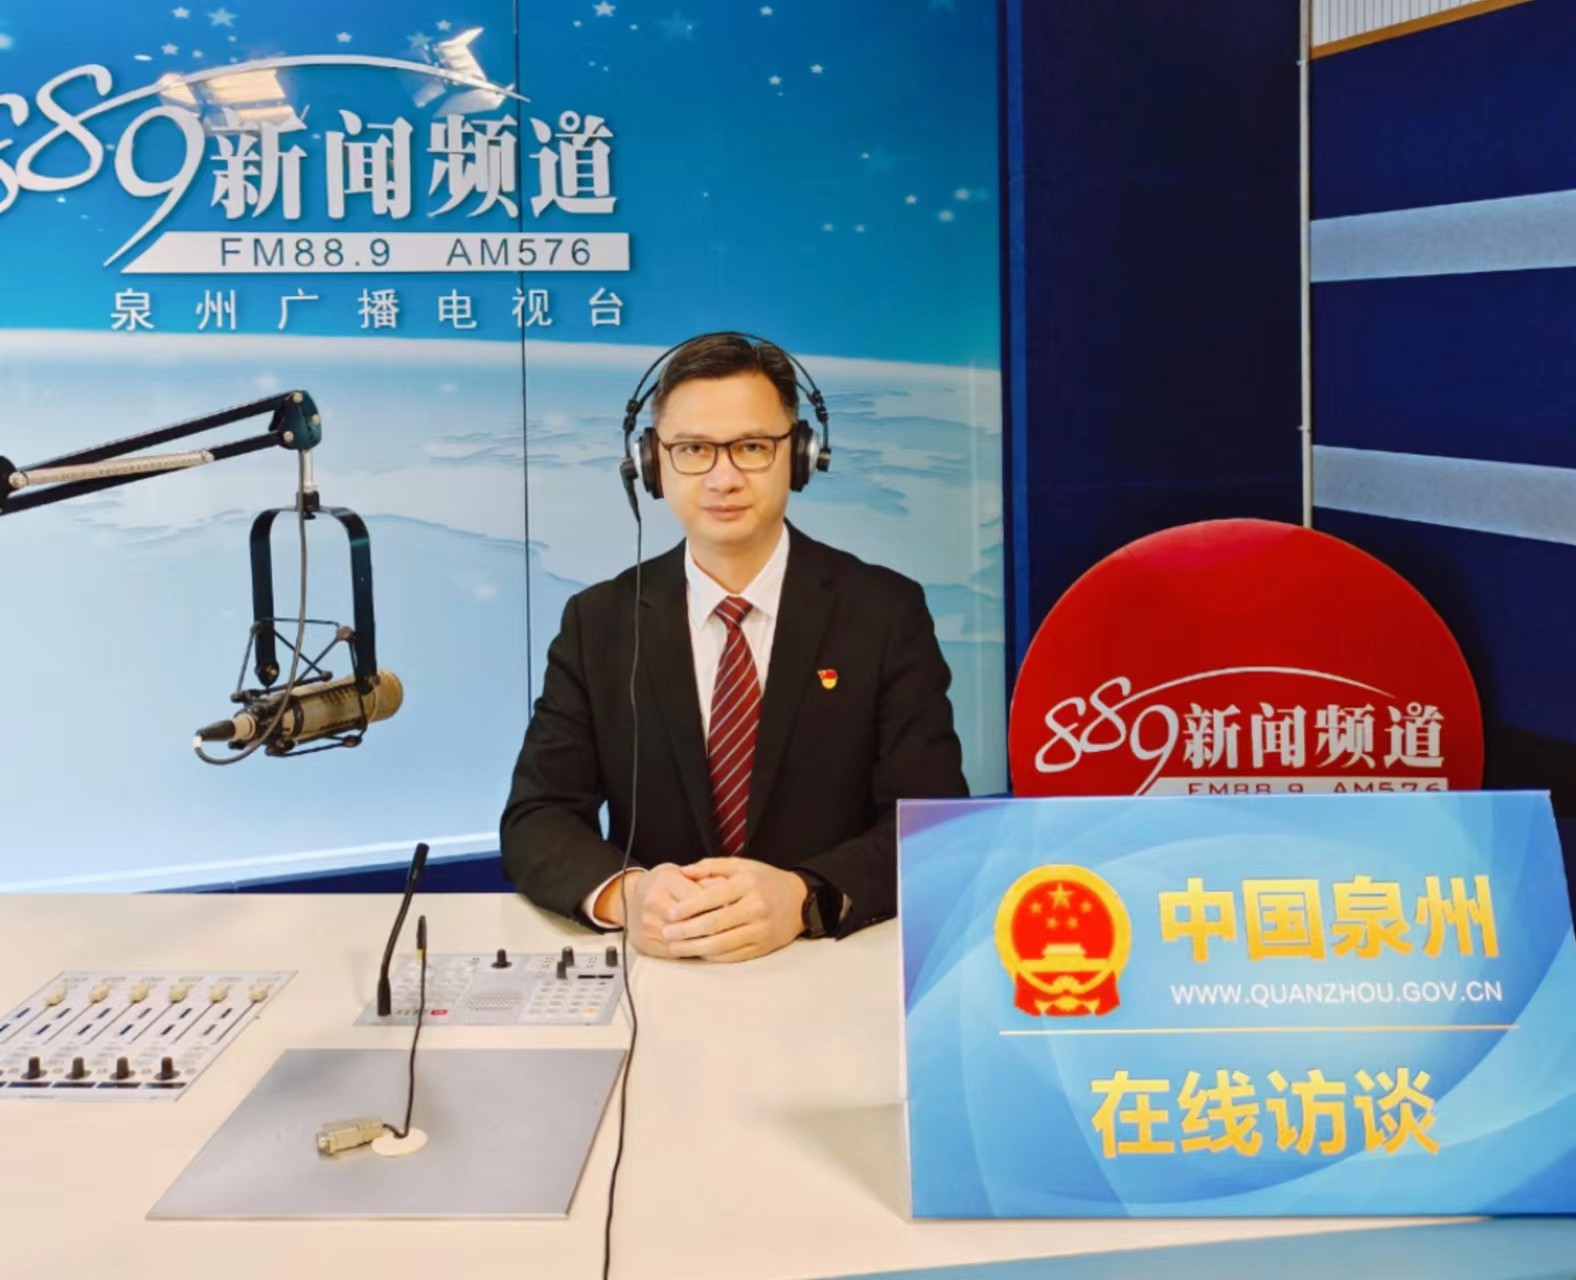 2023年2月23日泉州晋江国际机场上线泉州广播电视台《在线访谈》直播间